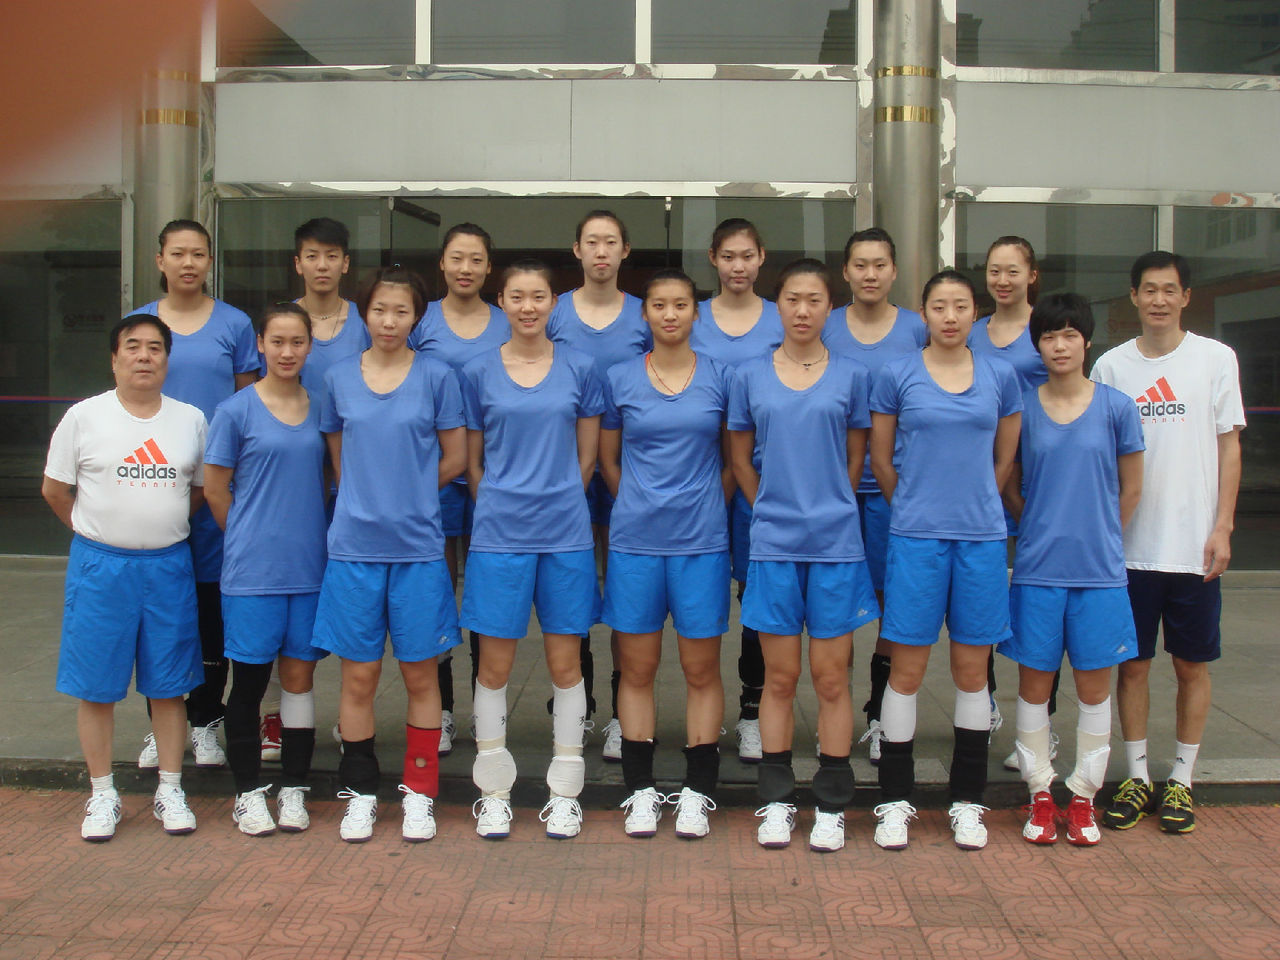 2013年U23女排世錦賽